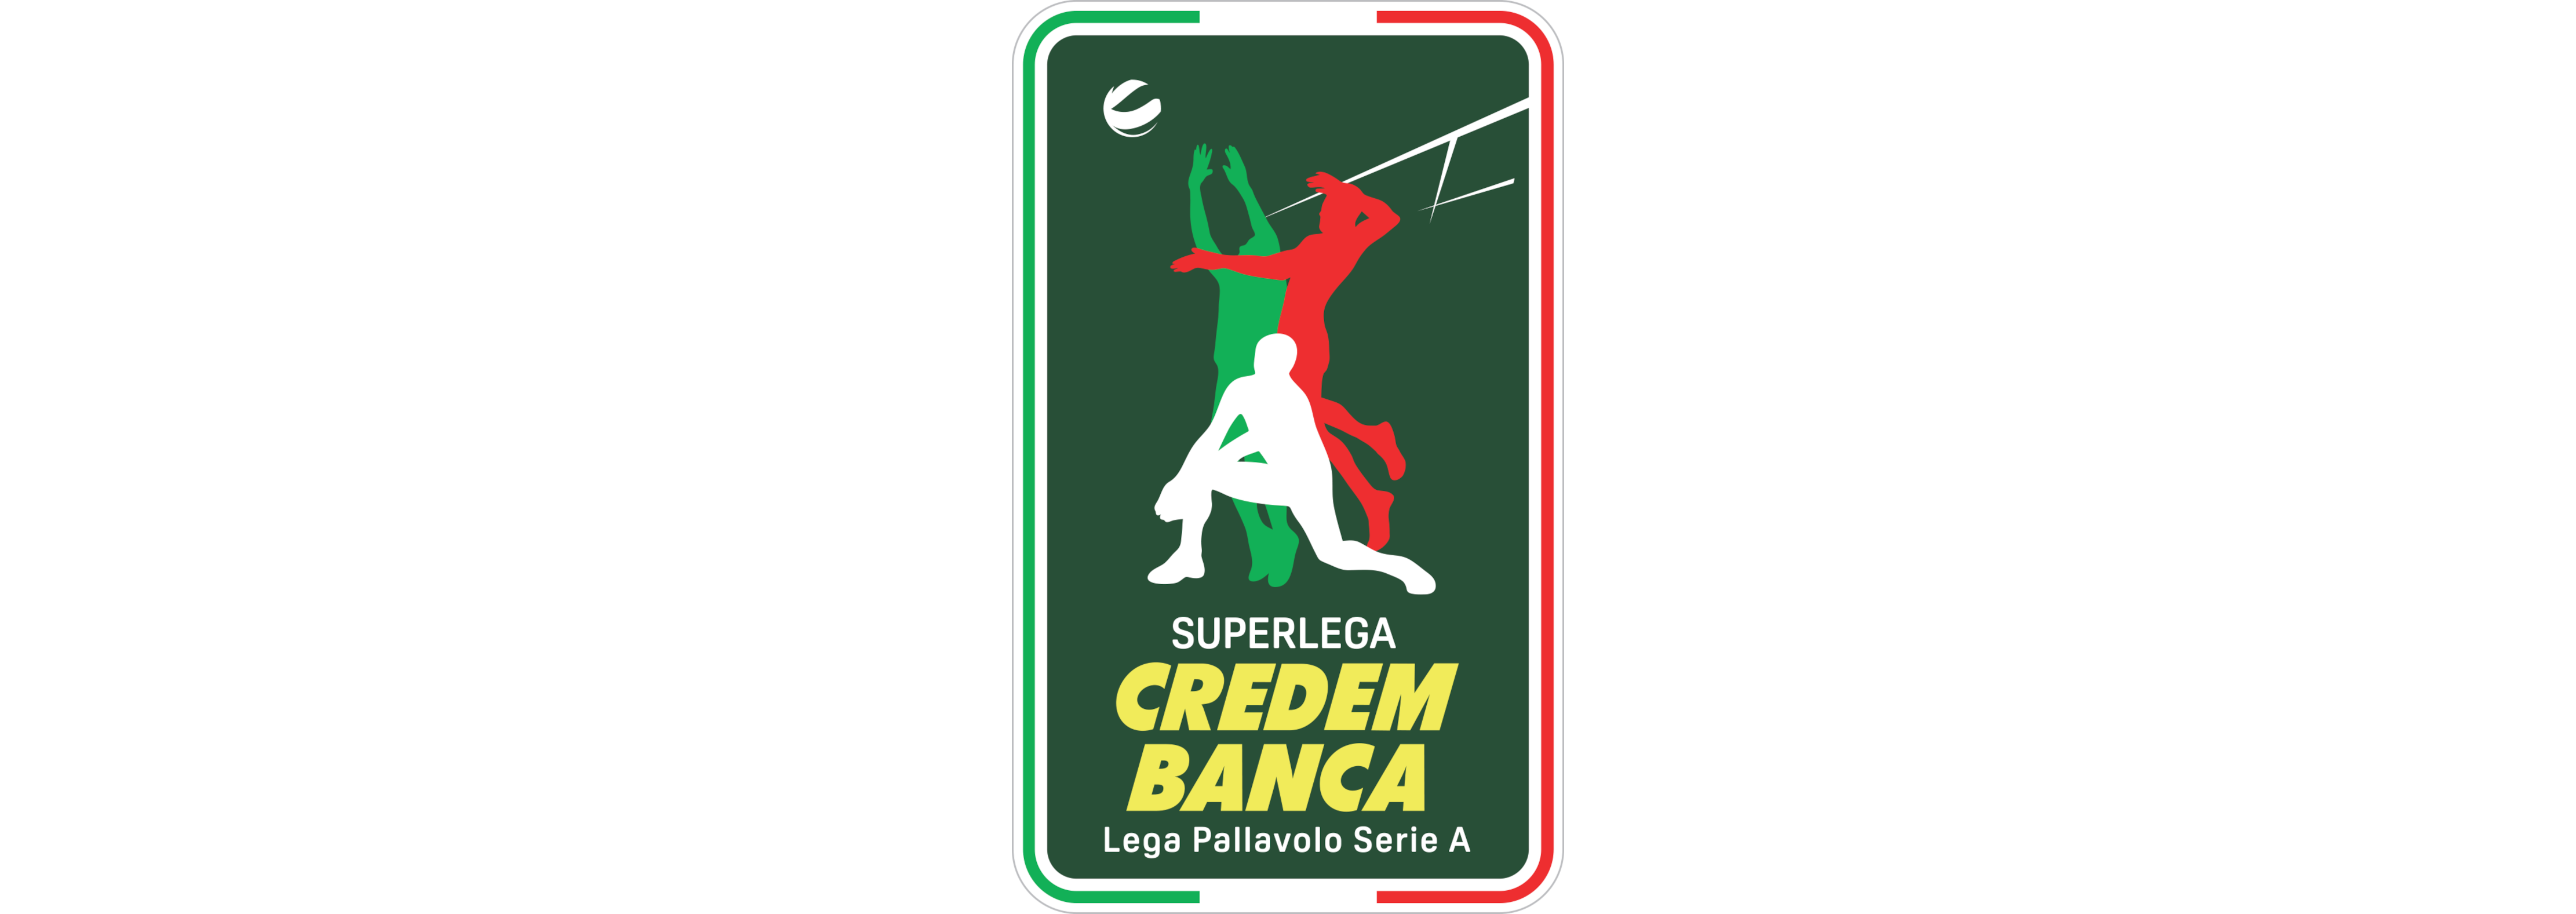 Playoff da Série C italiana marca volta de brasileiro no Siena